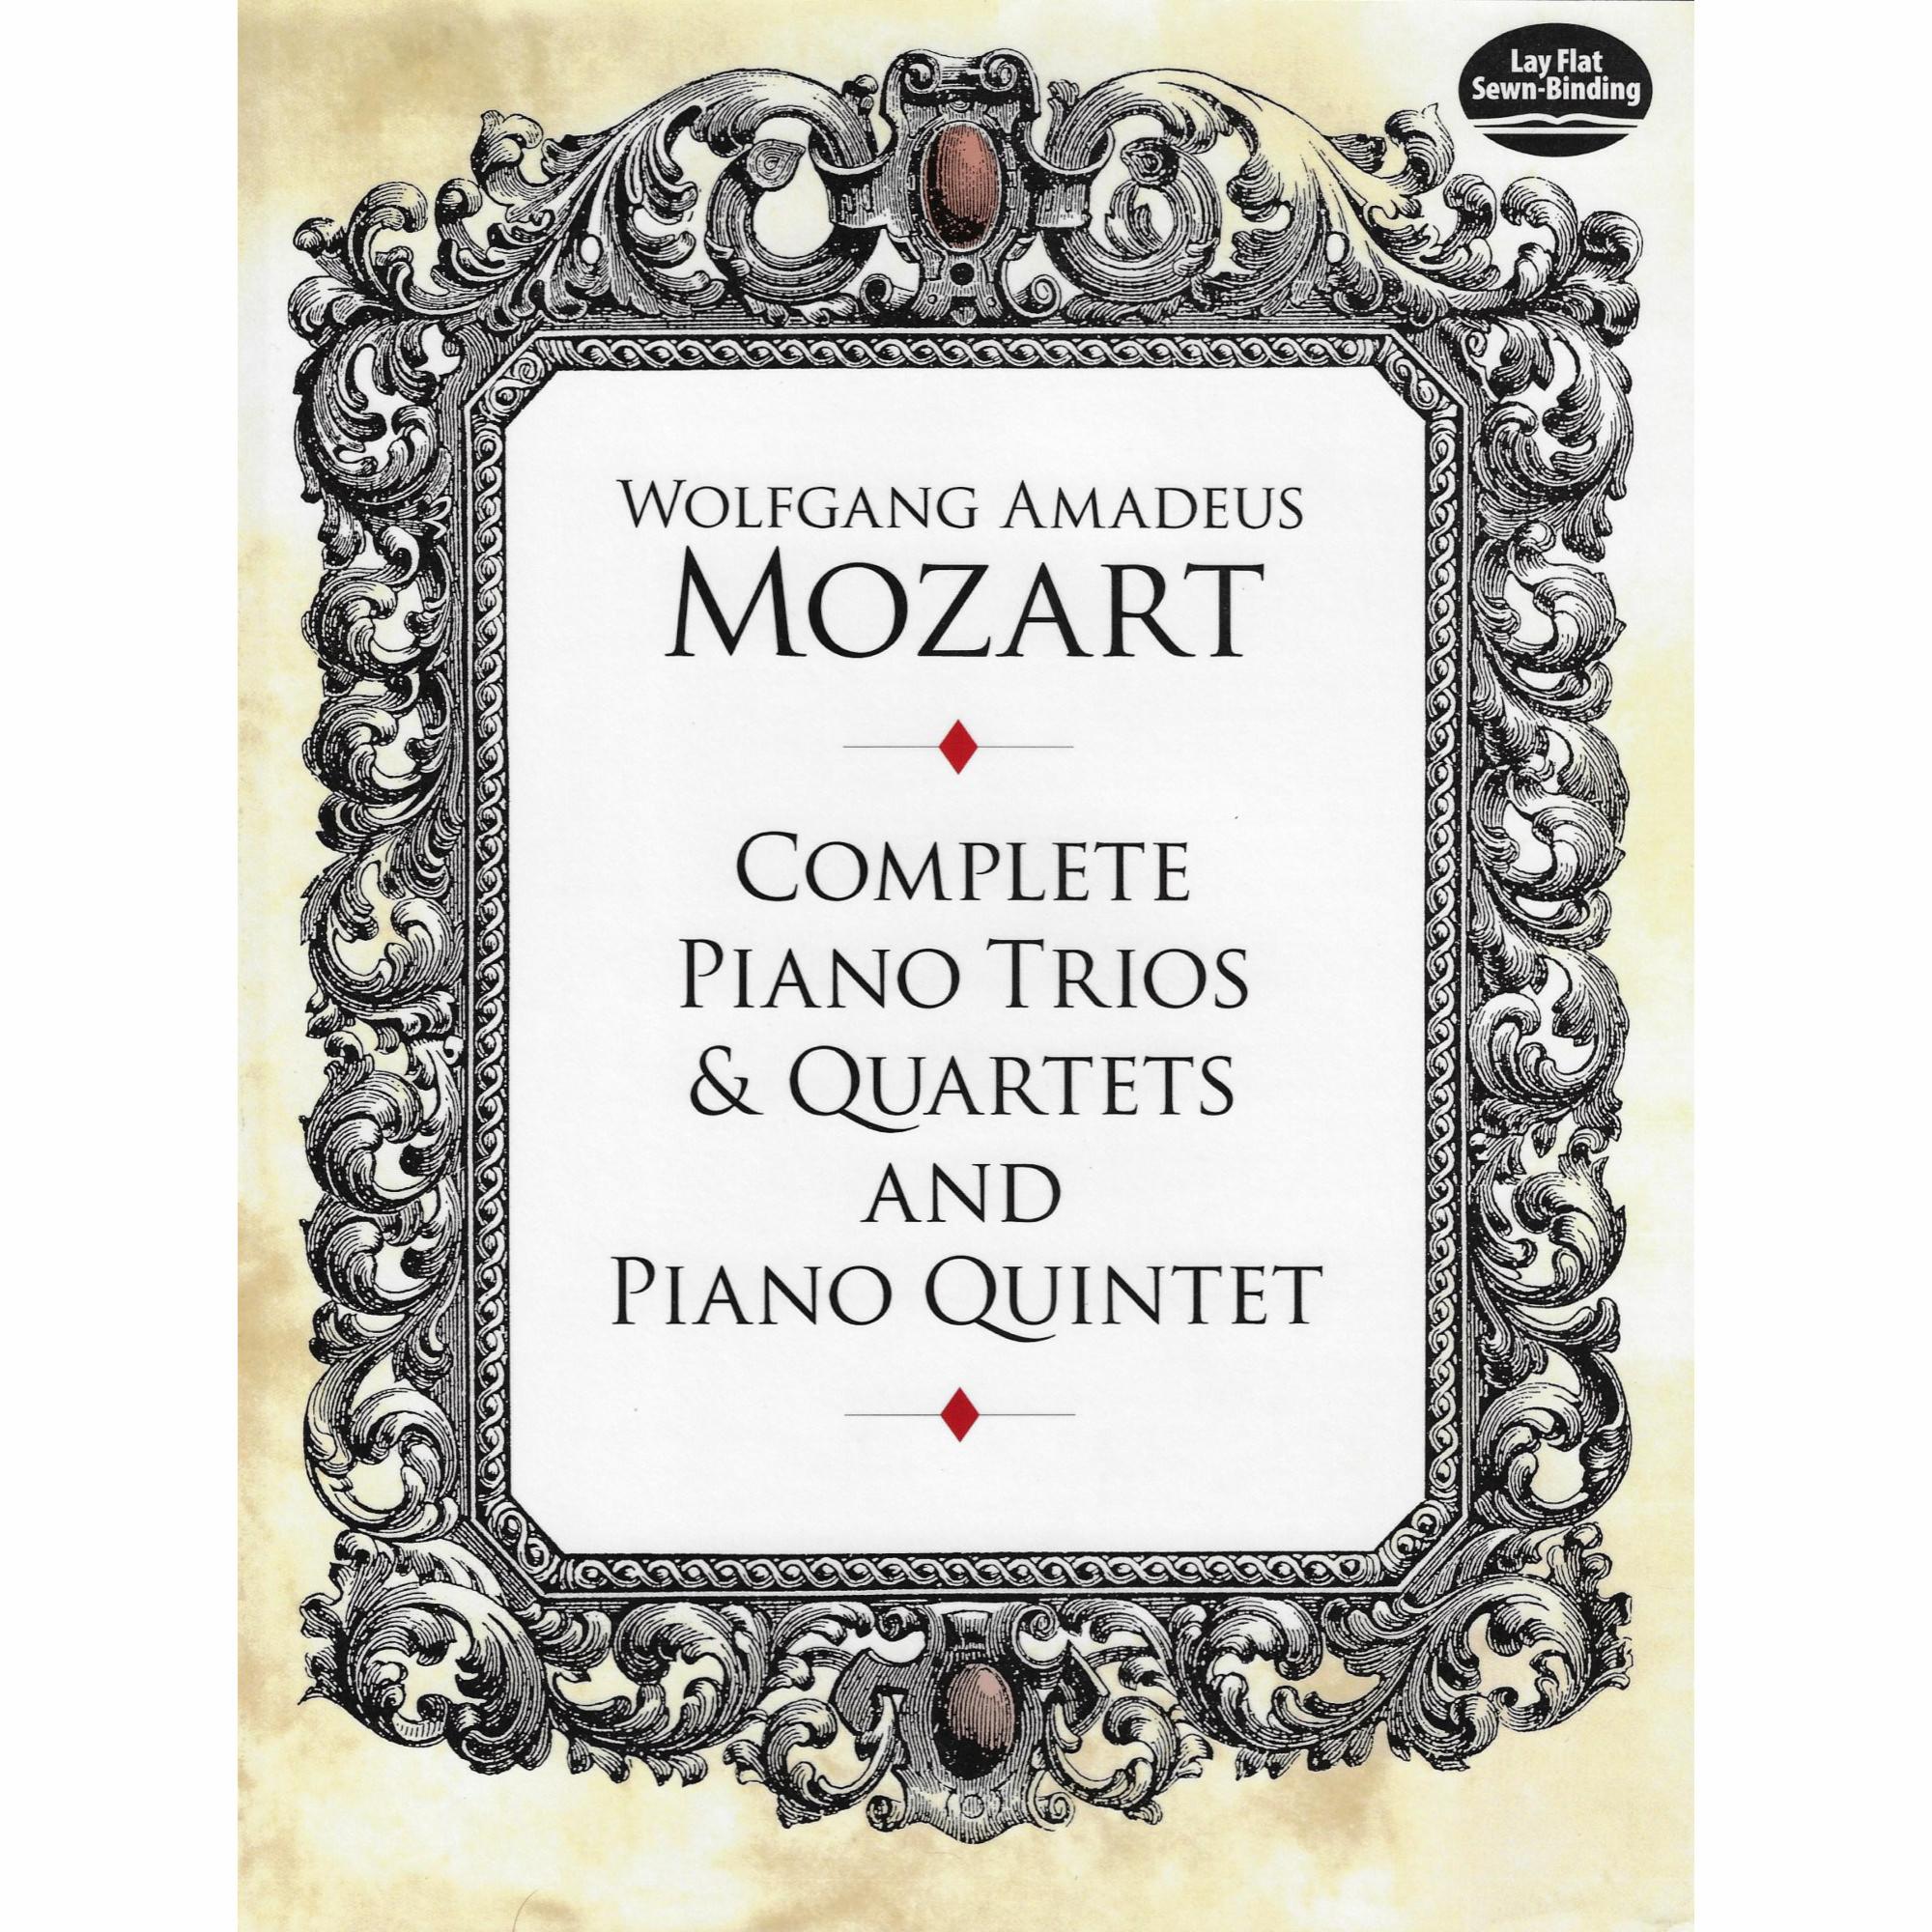 Mozart -- Complete Piano Trios & Quartets and Piano Quintet